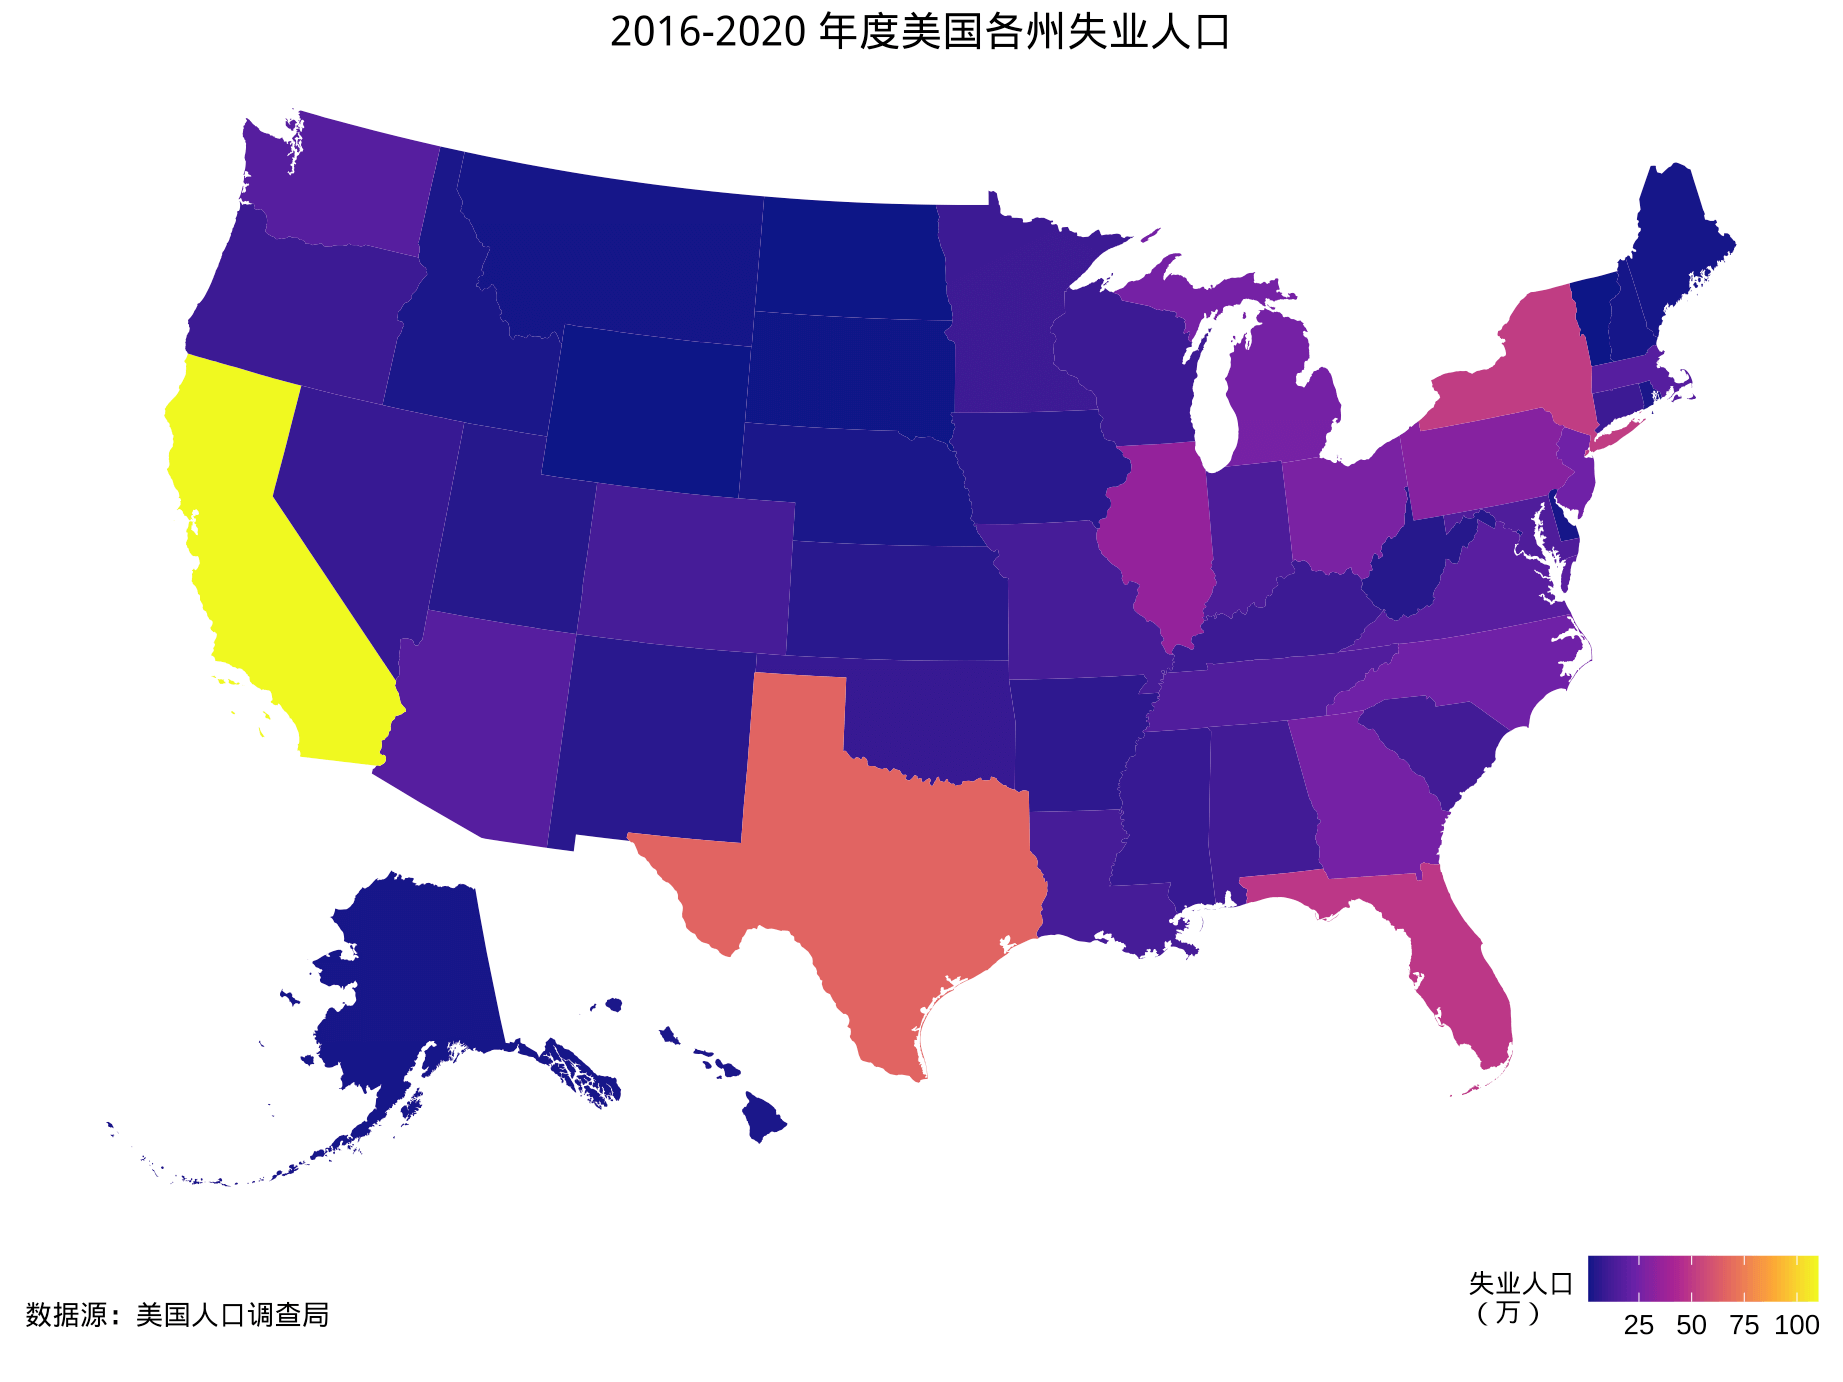 2016-2020 年度美国各州失业人口